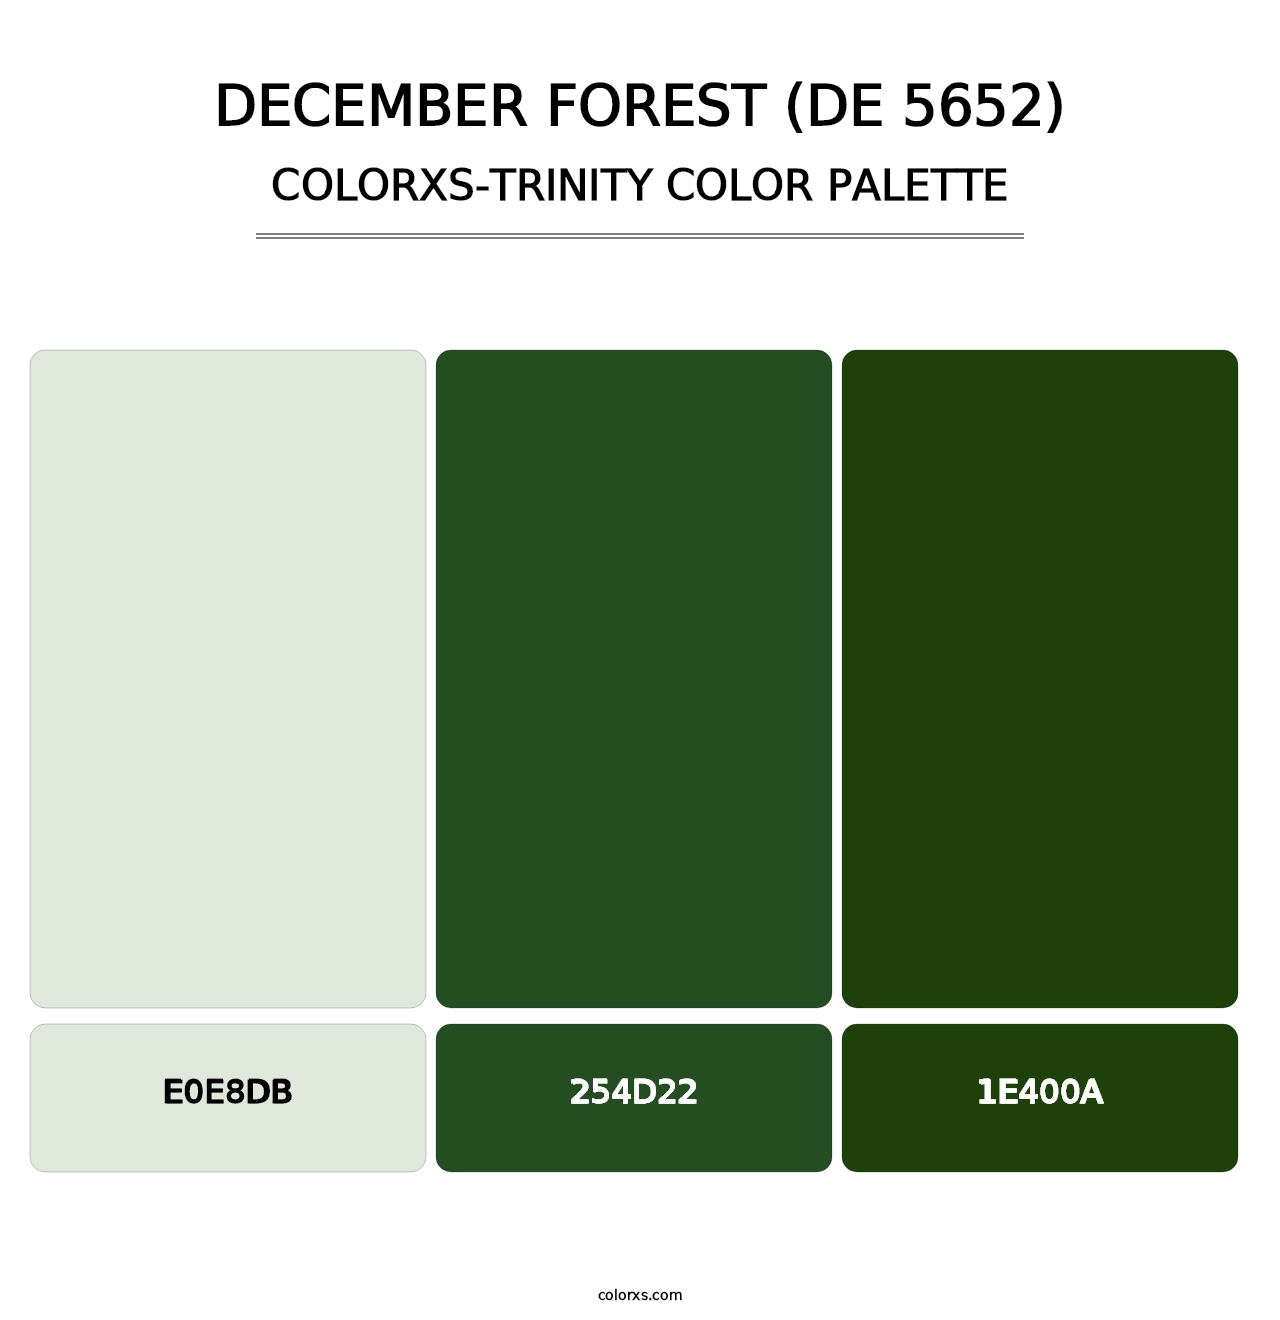 December Forest (DE 5652) - Colorxs Trinity Palette